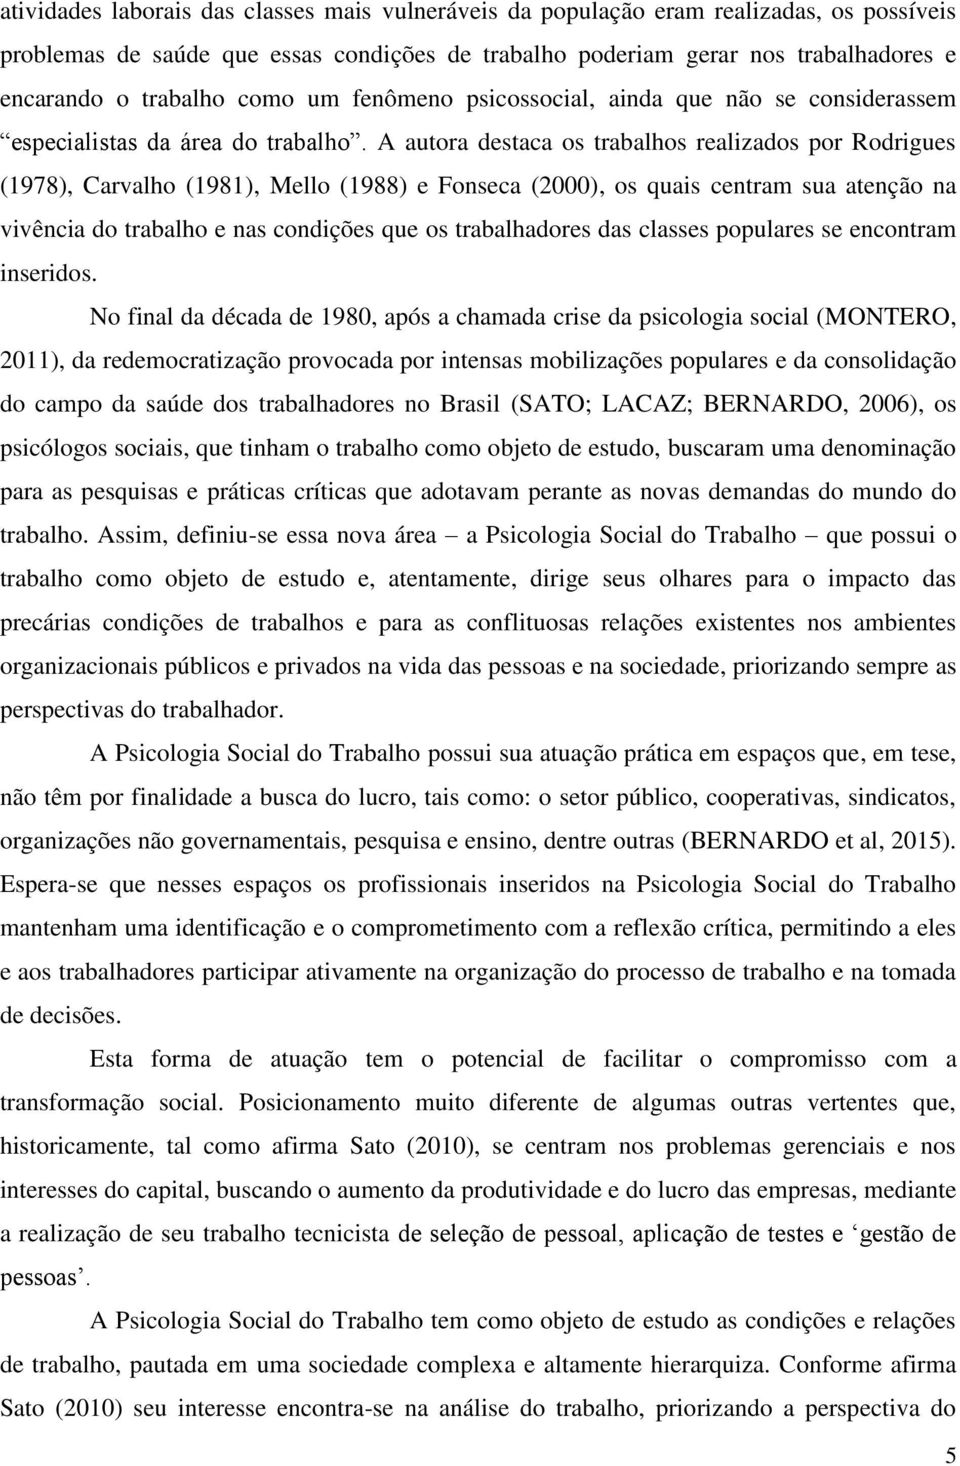 A autora destaca os trabalhos realizados por Rodrigues (1978), Carvalho (1981), Mello (1988) e Fonseca (2000), os quais centram sua atenção na vivência do trabalho e nas condições que os